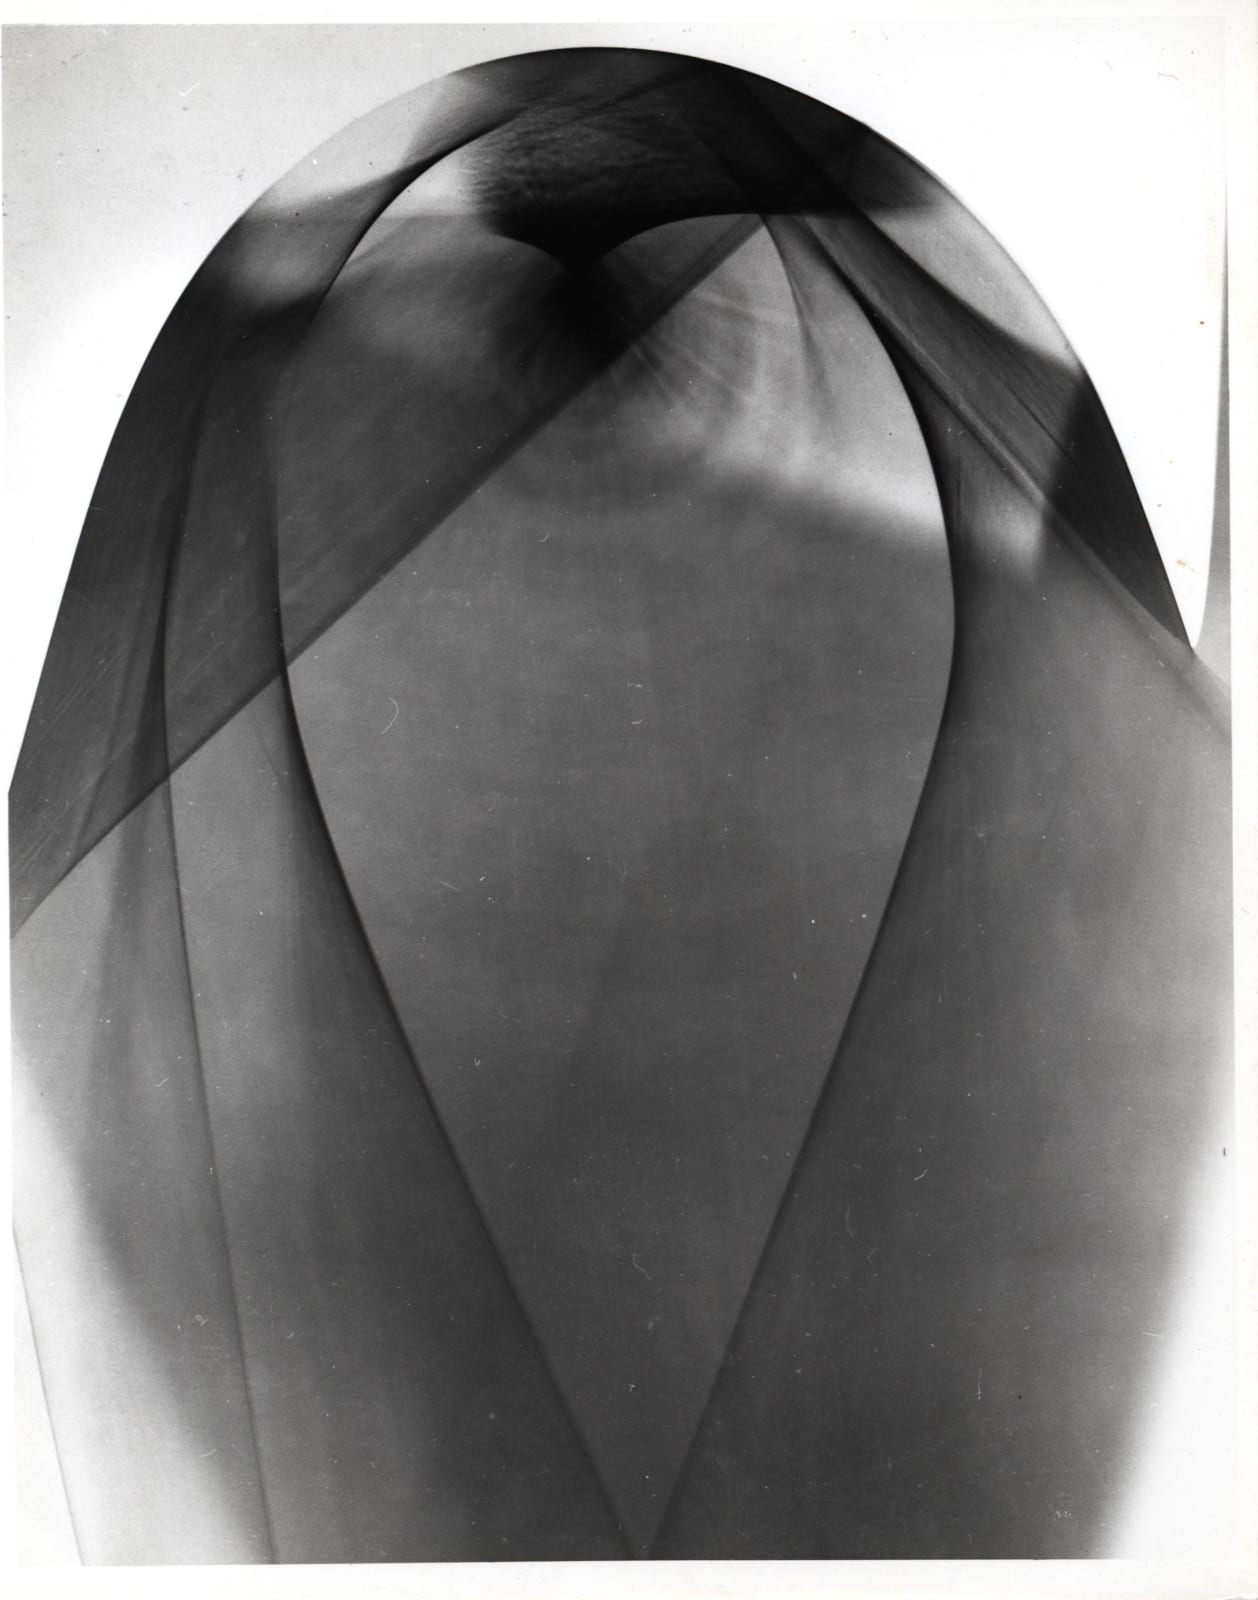 György Kepes, abstraction photogram, 1949